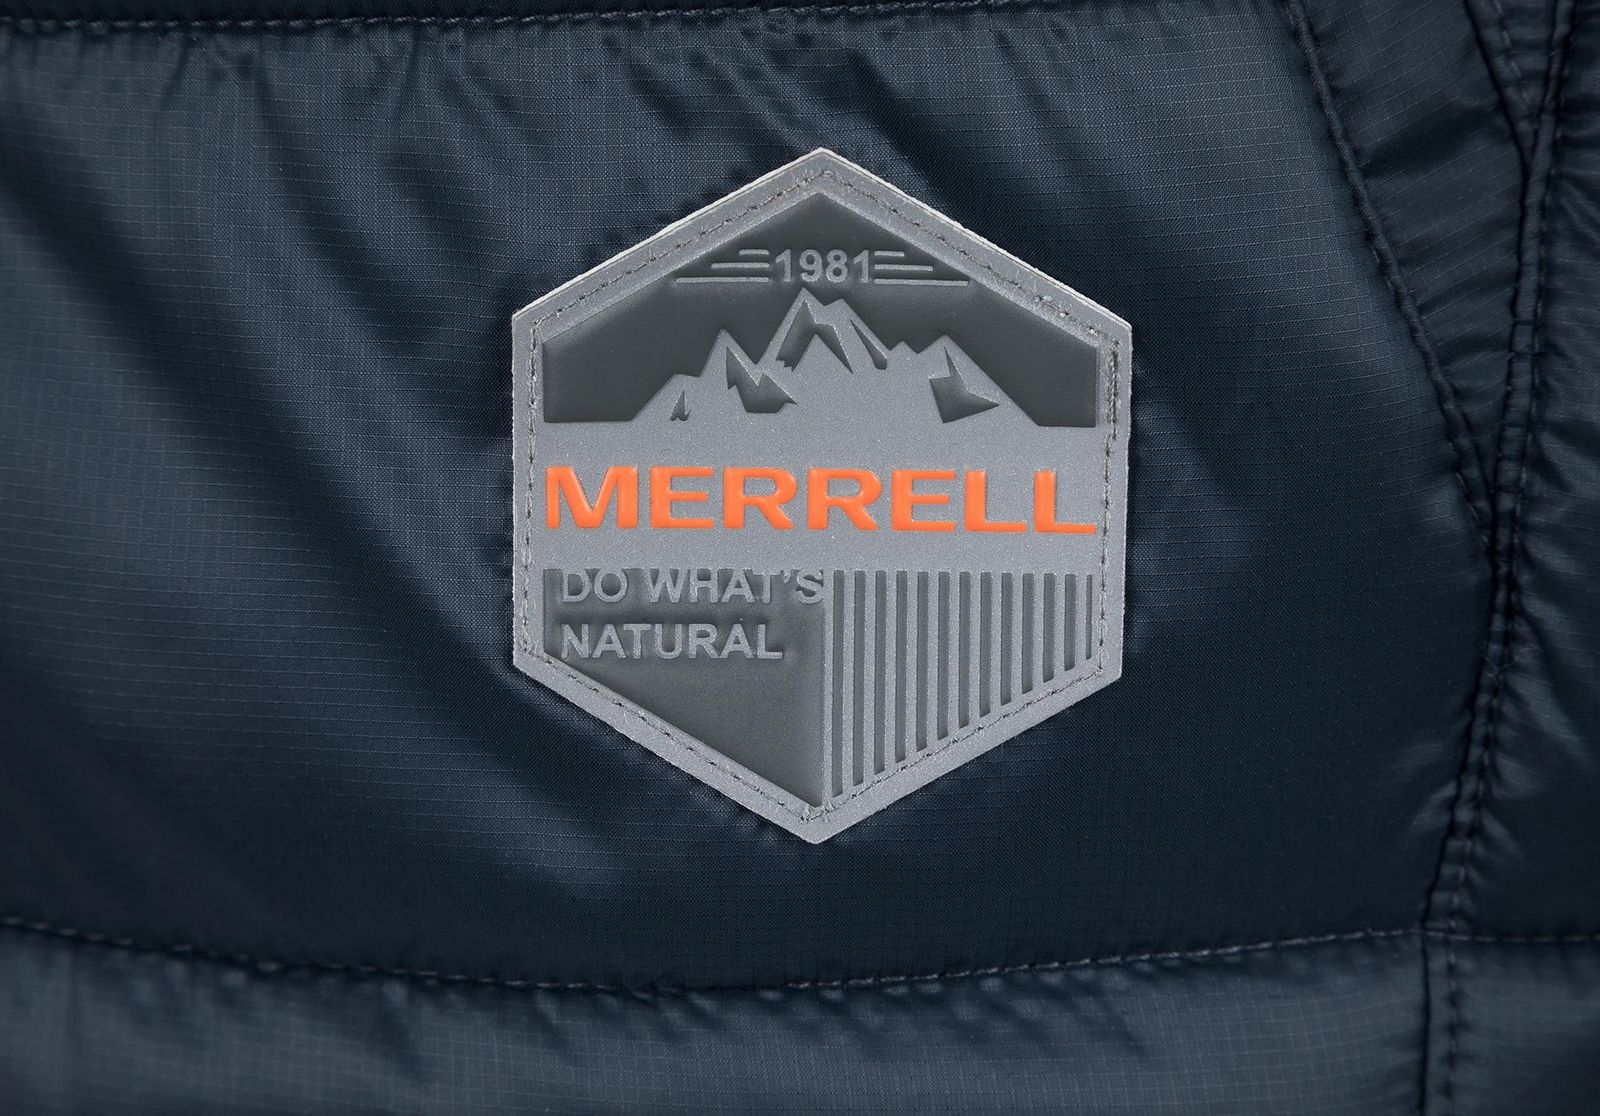   Merrell Men's Sleeveless Jacket Vest, : -. S19AMRVEM01-Z4.  48